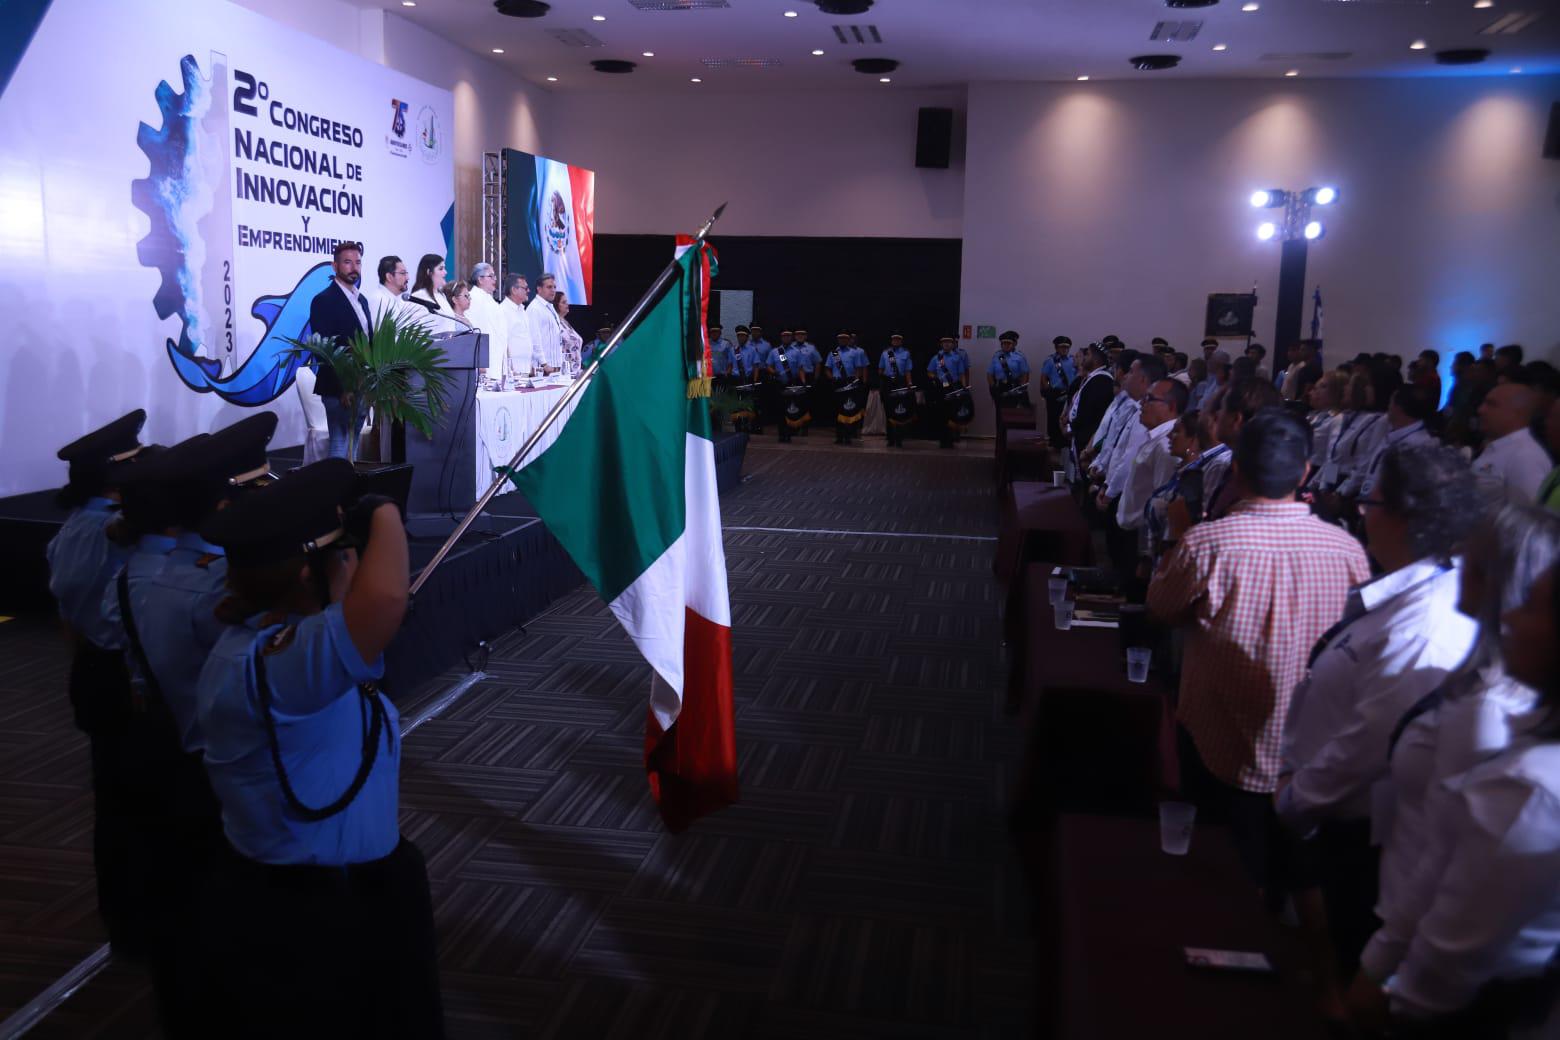 $!Buscan concientizar en Congreso Nacional de Innovación y Emprendimiento, en Mazatlán